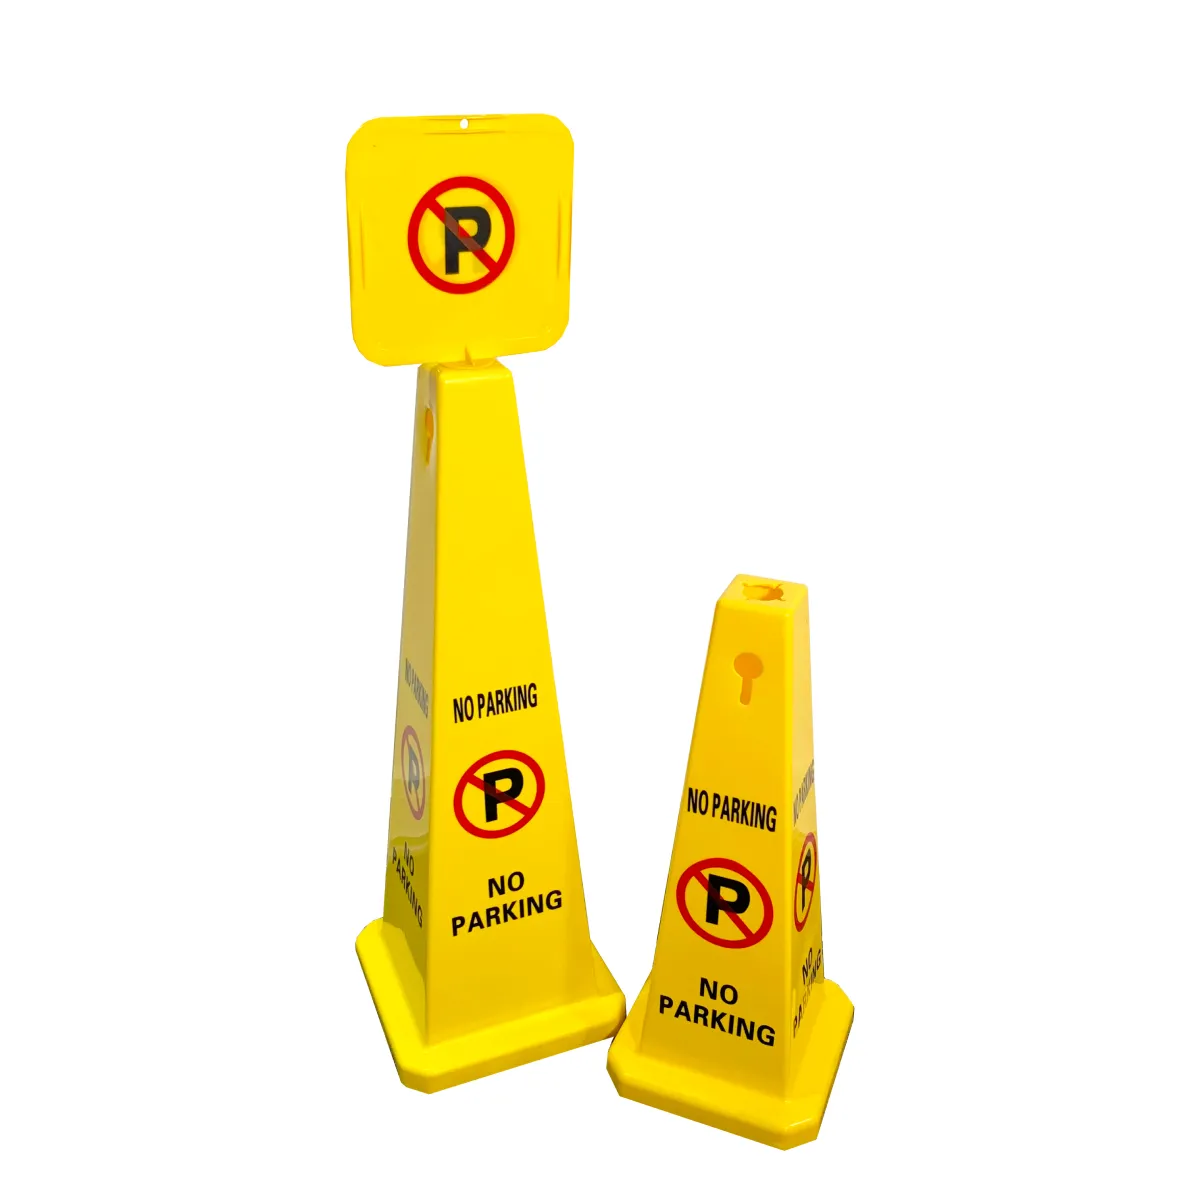 Желтый пластиковый предупреждающий знак для влажного пола, предупреждающий знак, предупреждающий конус при отсутствии парковки